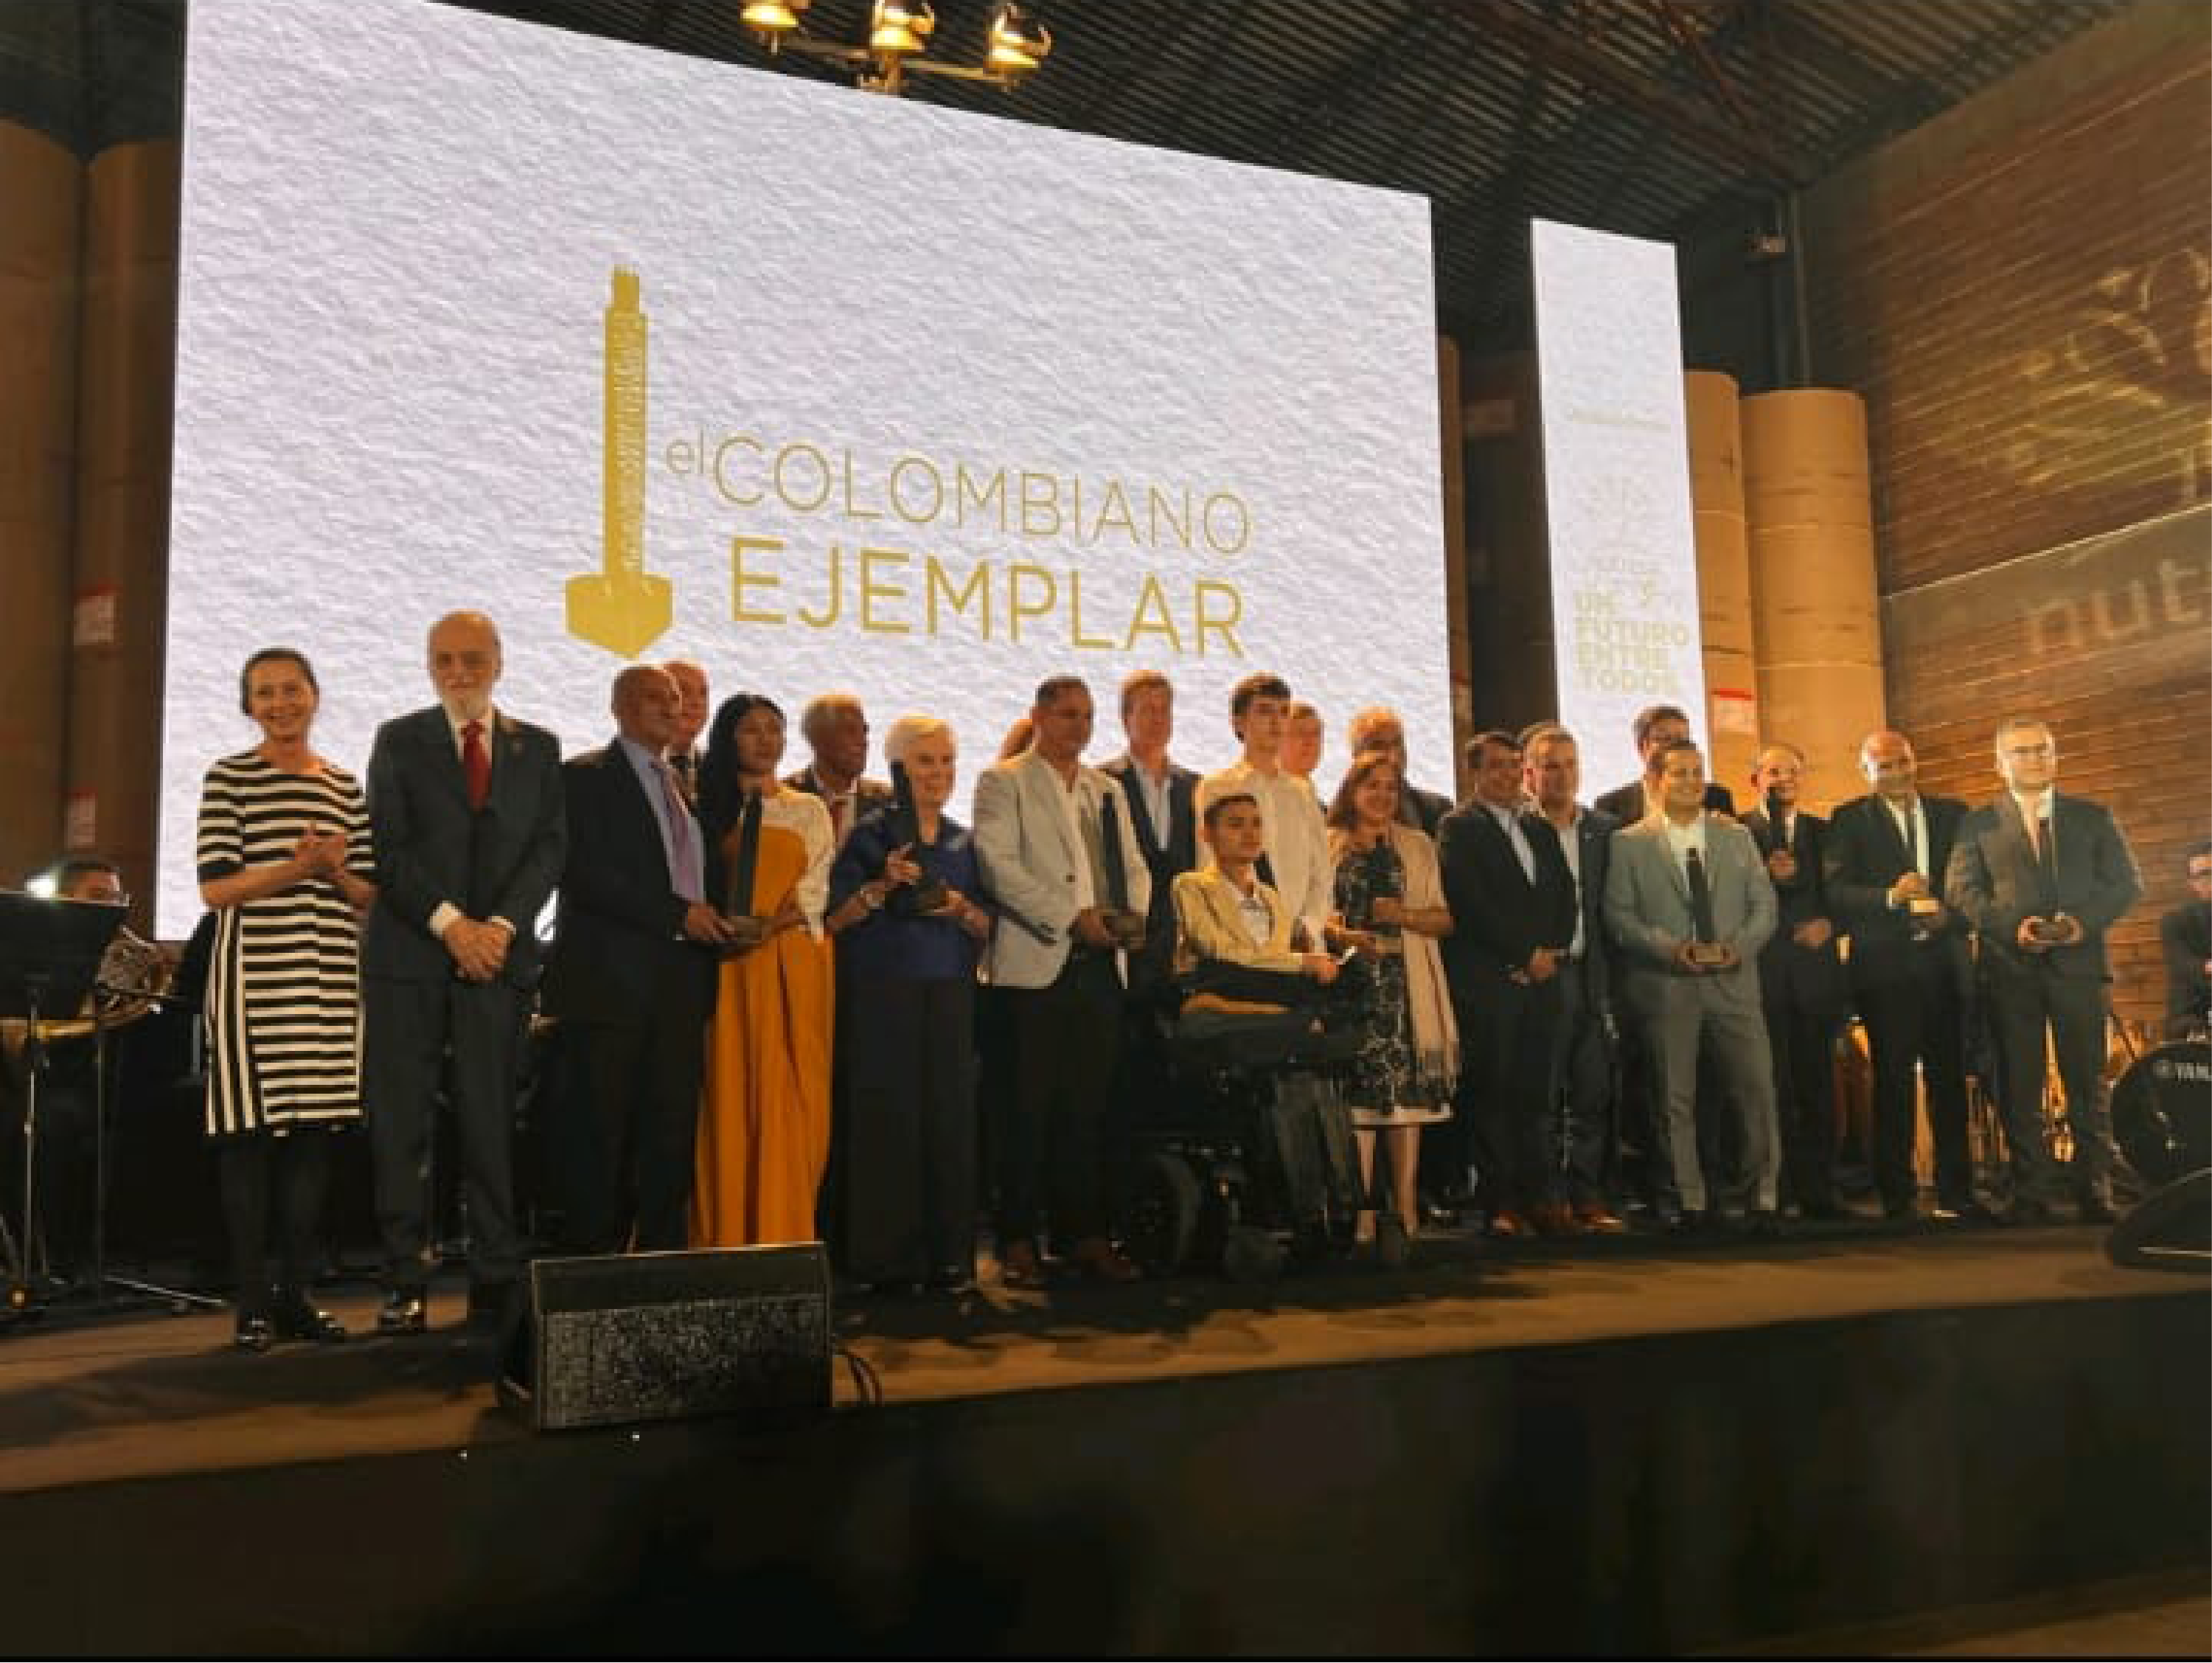 La Corporación Social El Comité recibió el premio «El Colombiano Ejemplar» en la categoría de Salud